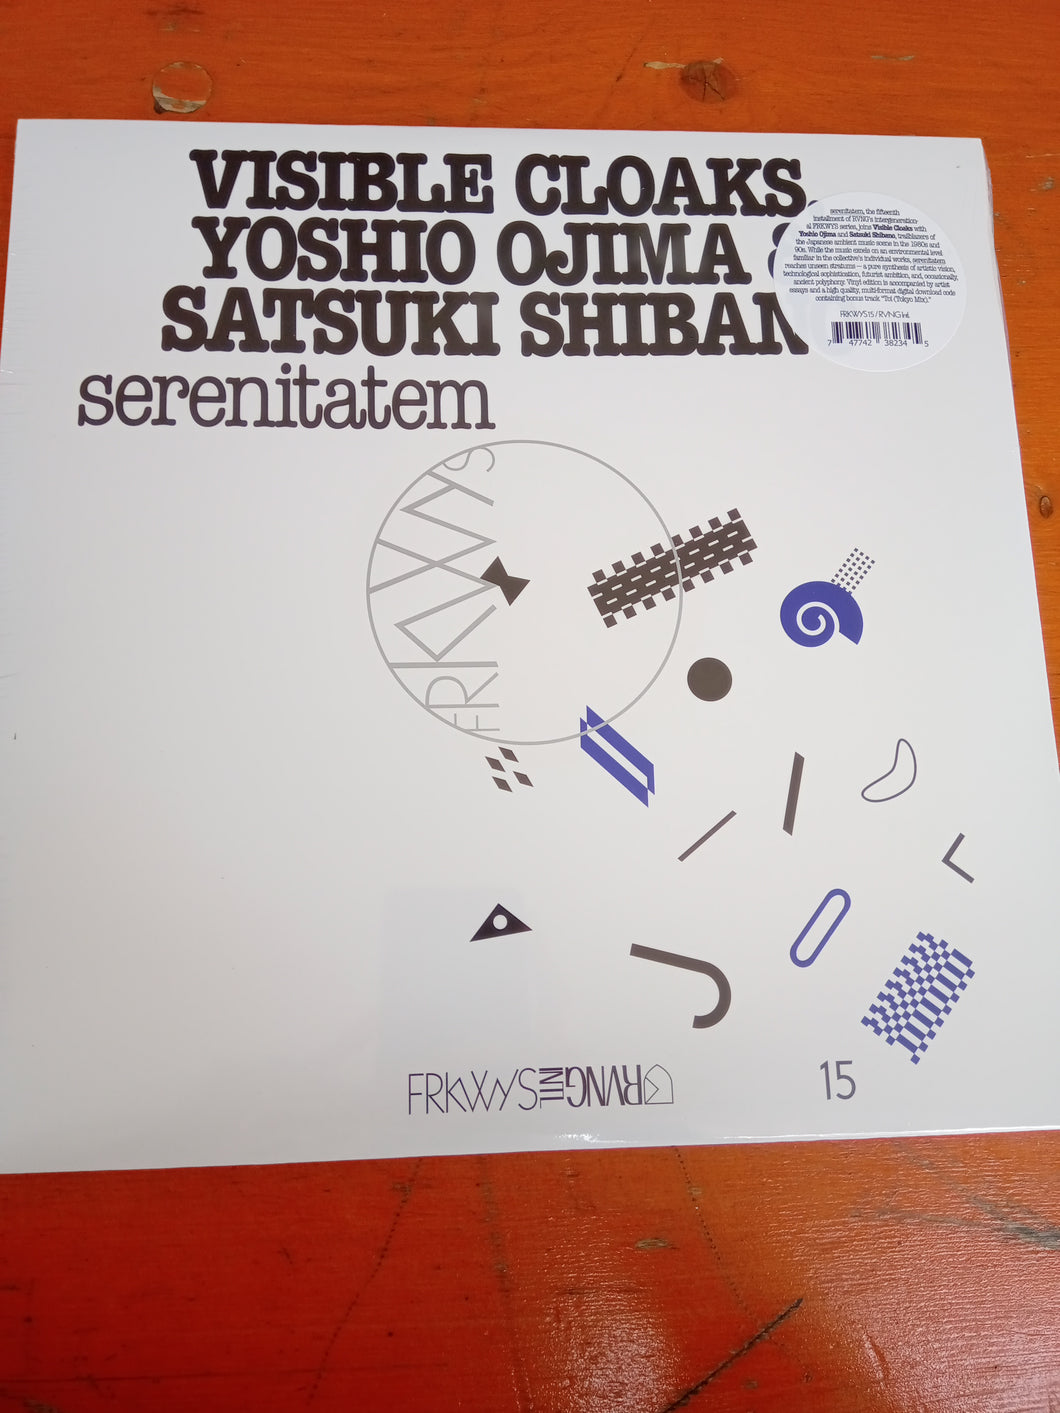 Visible Cloaks, Yoshio Ojima & Satsuki Shibano - FRKWYS Vol. 15: Serenitatem